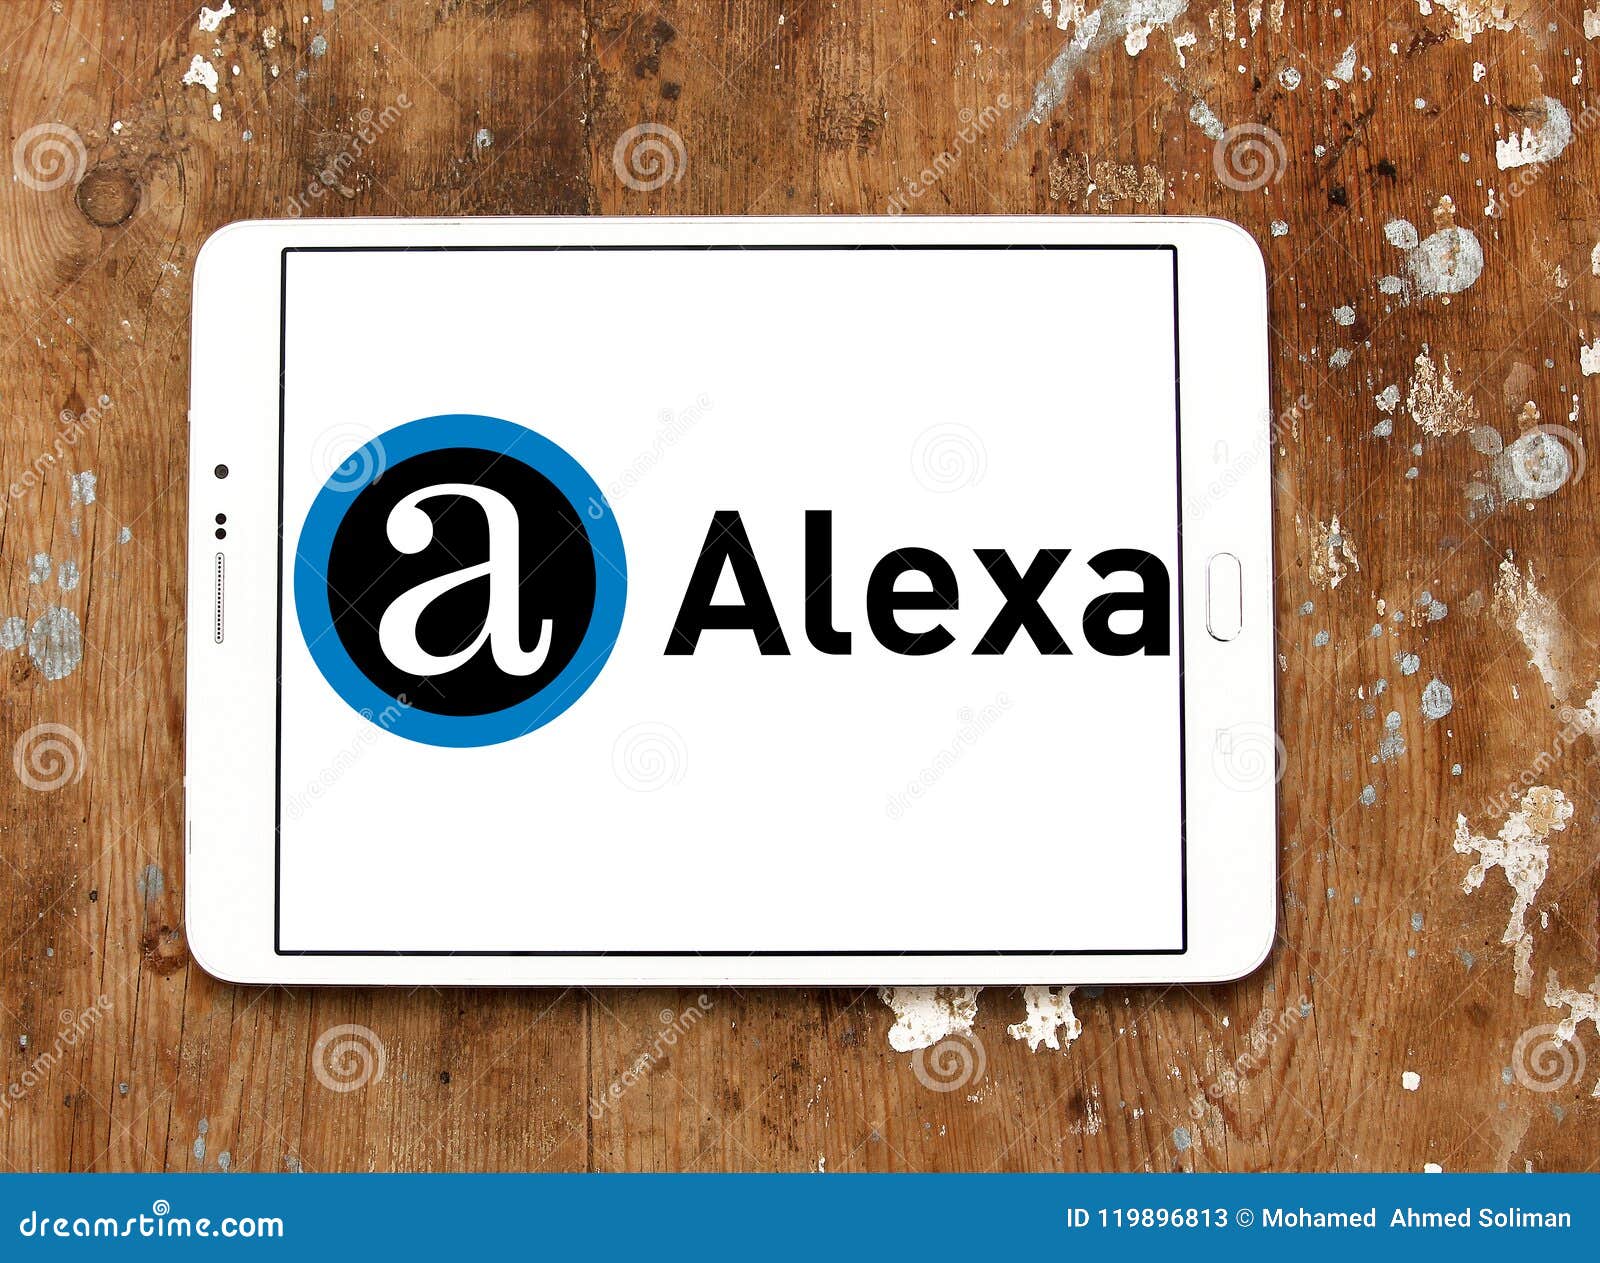 Alexa Internet Company Logo Editorial Stock Photo - Image of data: